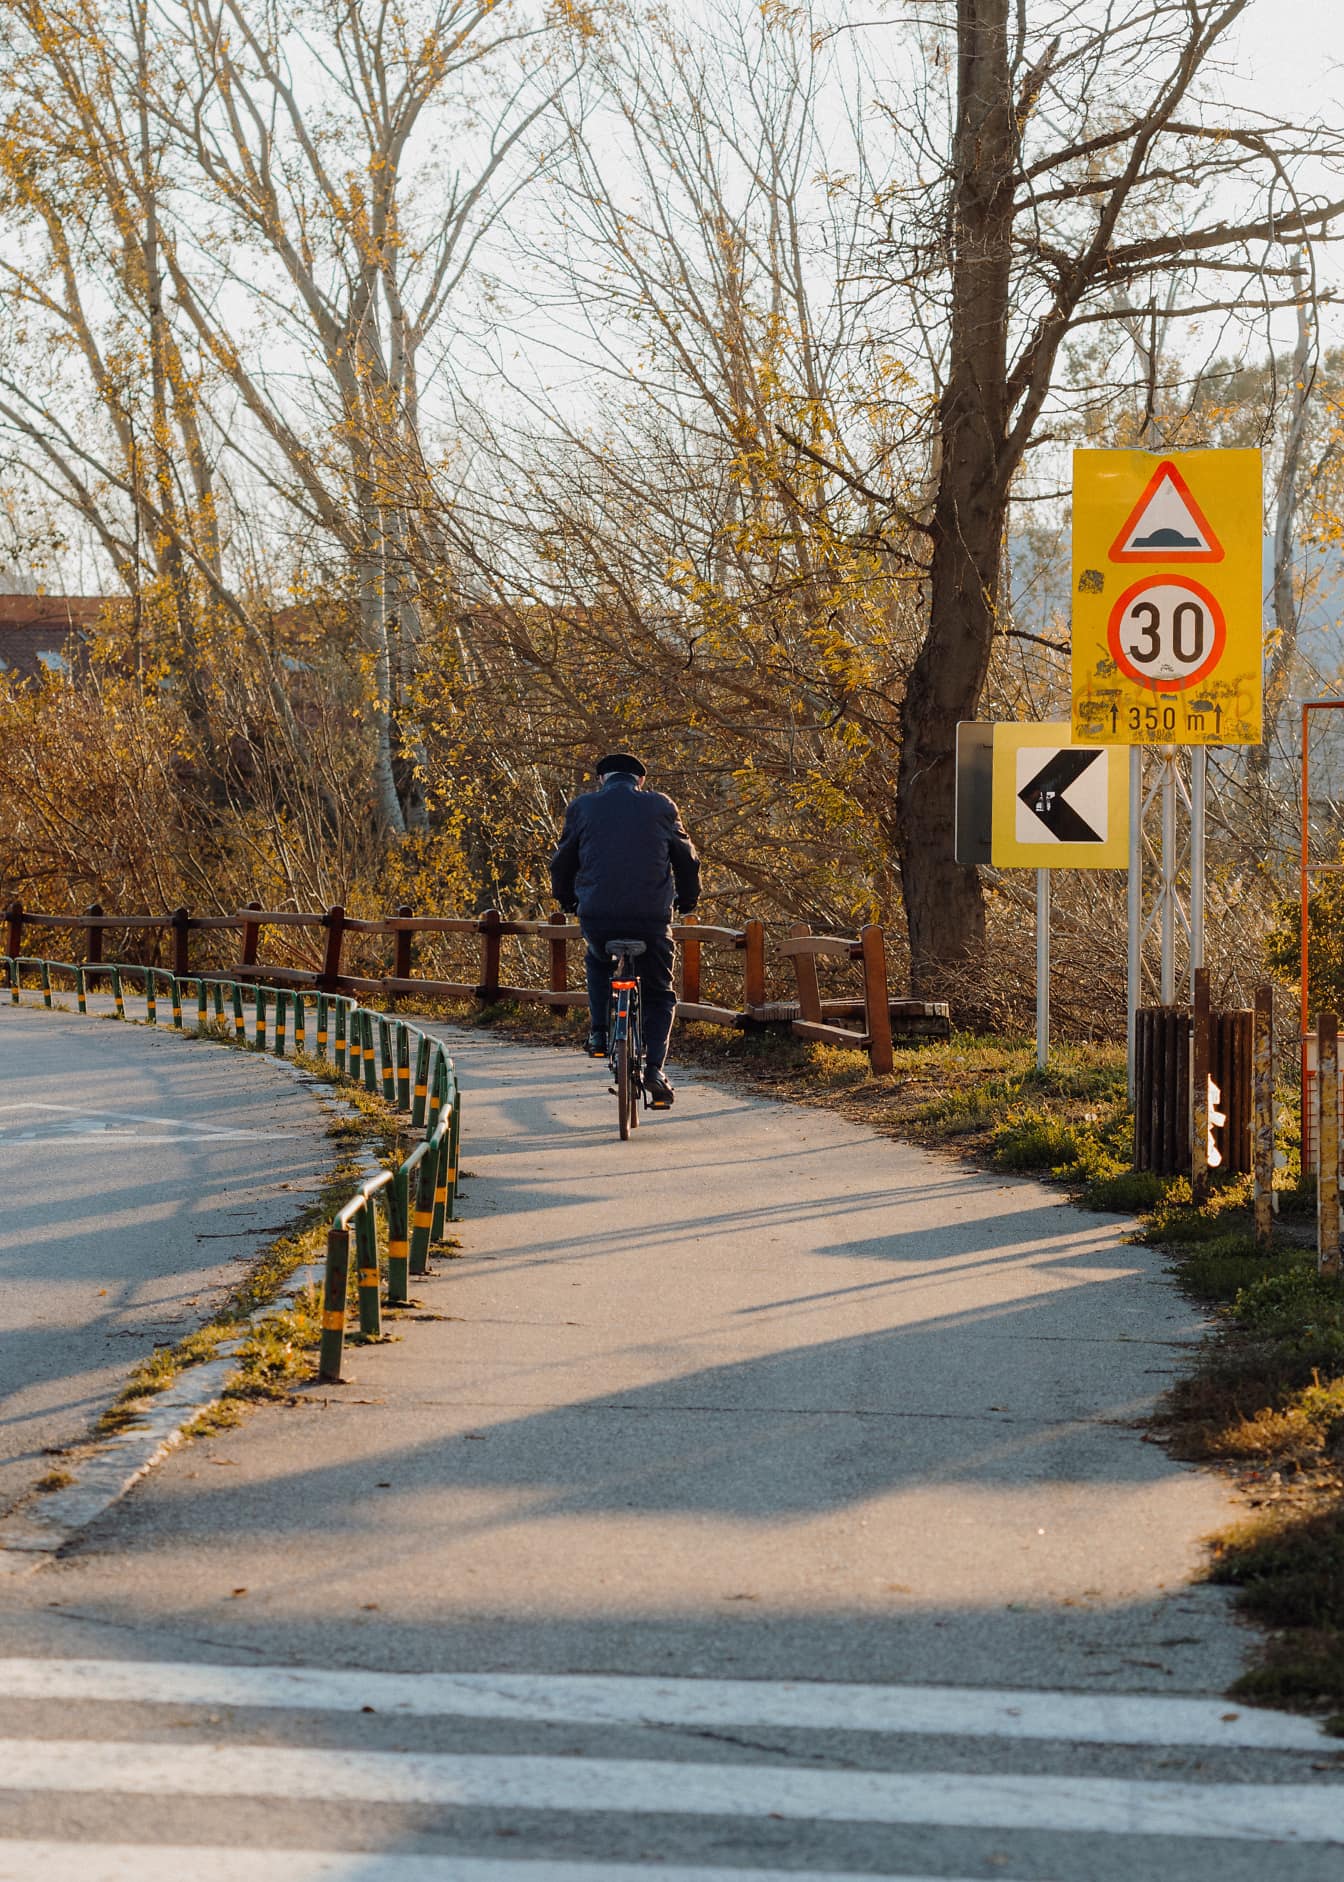 Vieil homme faisant du vélo sur une piste goudronnée avec panneau de signalisation sur la route à 30 km/h